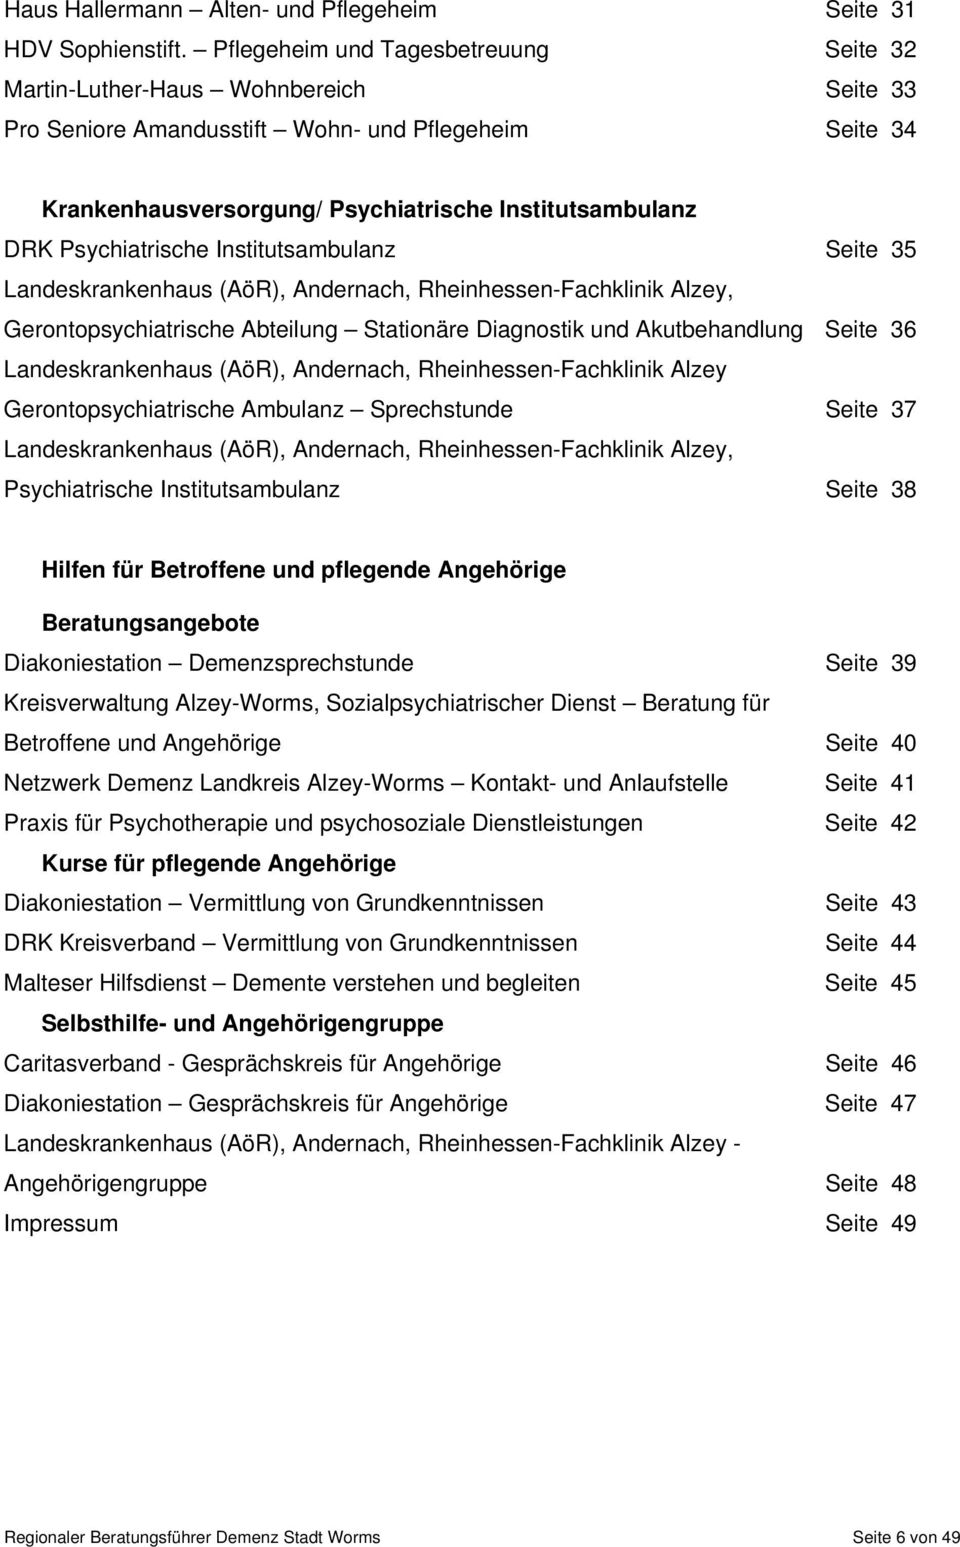 Psychiatrische Institutsambulanz Seite 35 Landeskrankenhaus (AöR), Andernach, Rheinhessen-Fachklinik Alzey, Gerontopsychiatrische Abteilung Stationäre Diagnostik und Akutbehandlung Seite 36